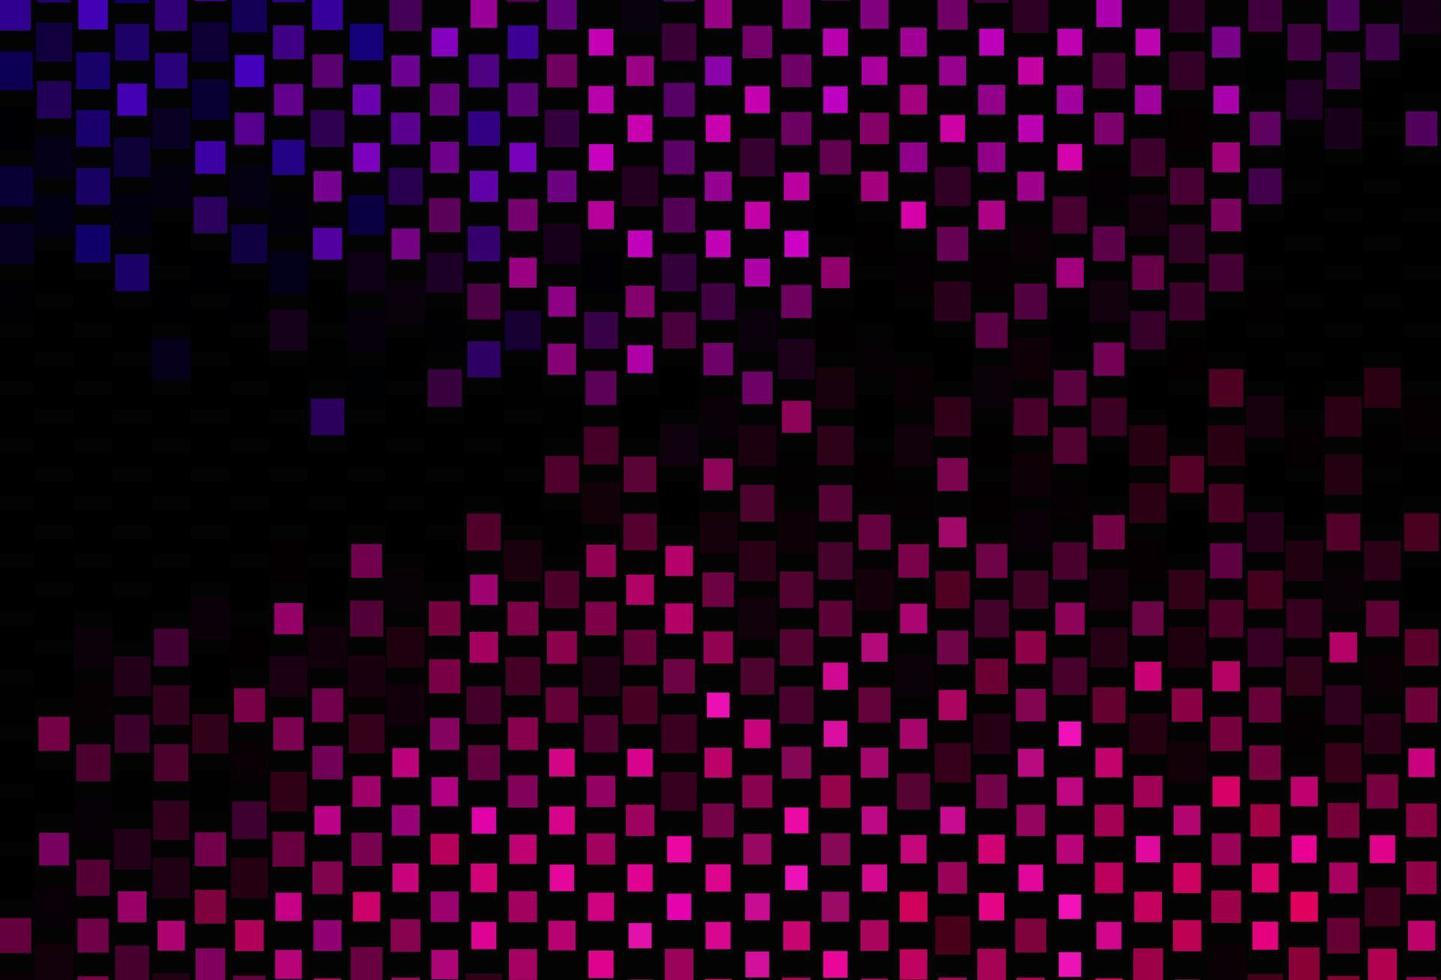 pano de fundo vector rosa escuro com linhas, retângulos.